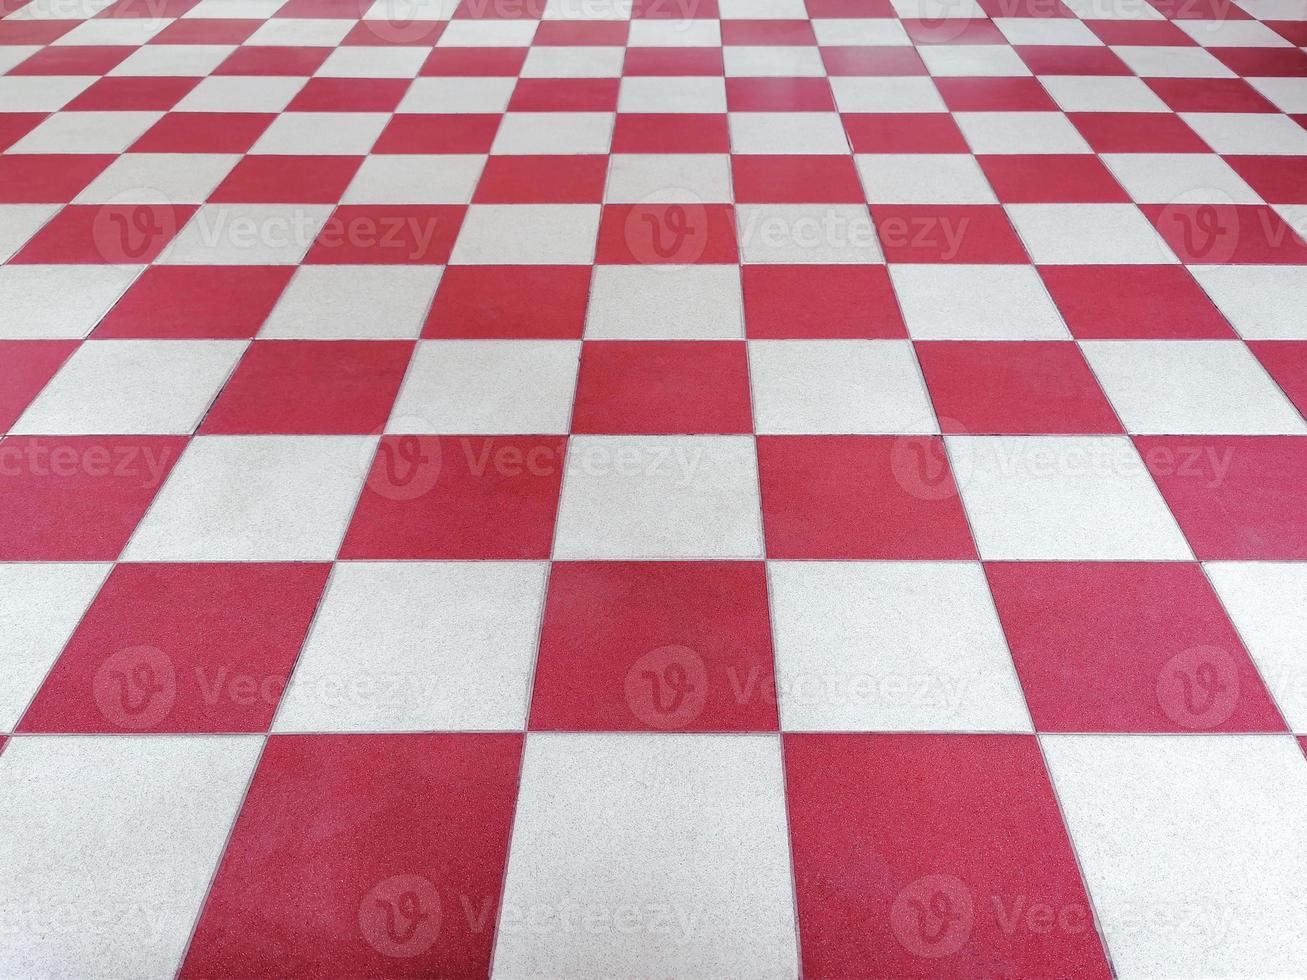 suelo de baldosas rojas y blancas simétricas con textura de cuadrícula en vista en perspectiva para el fondo.suelo de baldosas permanente. cuadrado blanco rojo hecho de material cerámico de piso foto